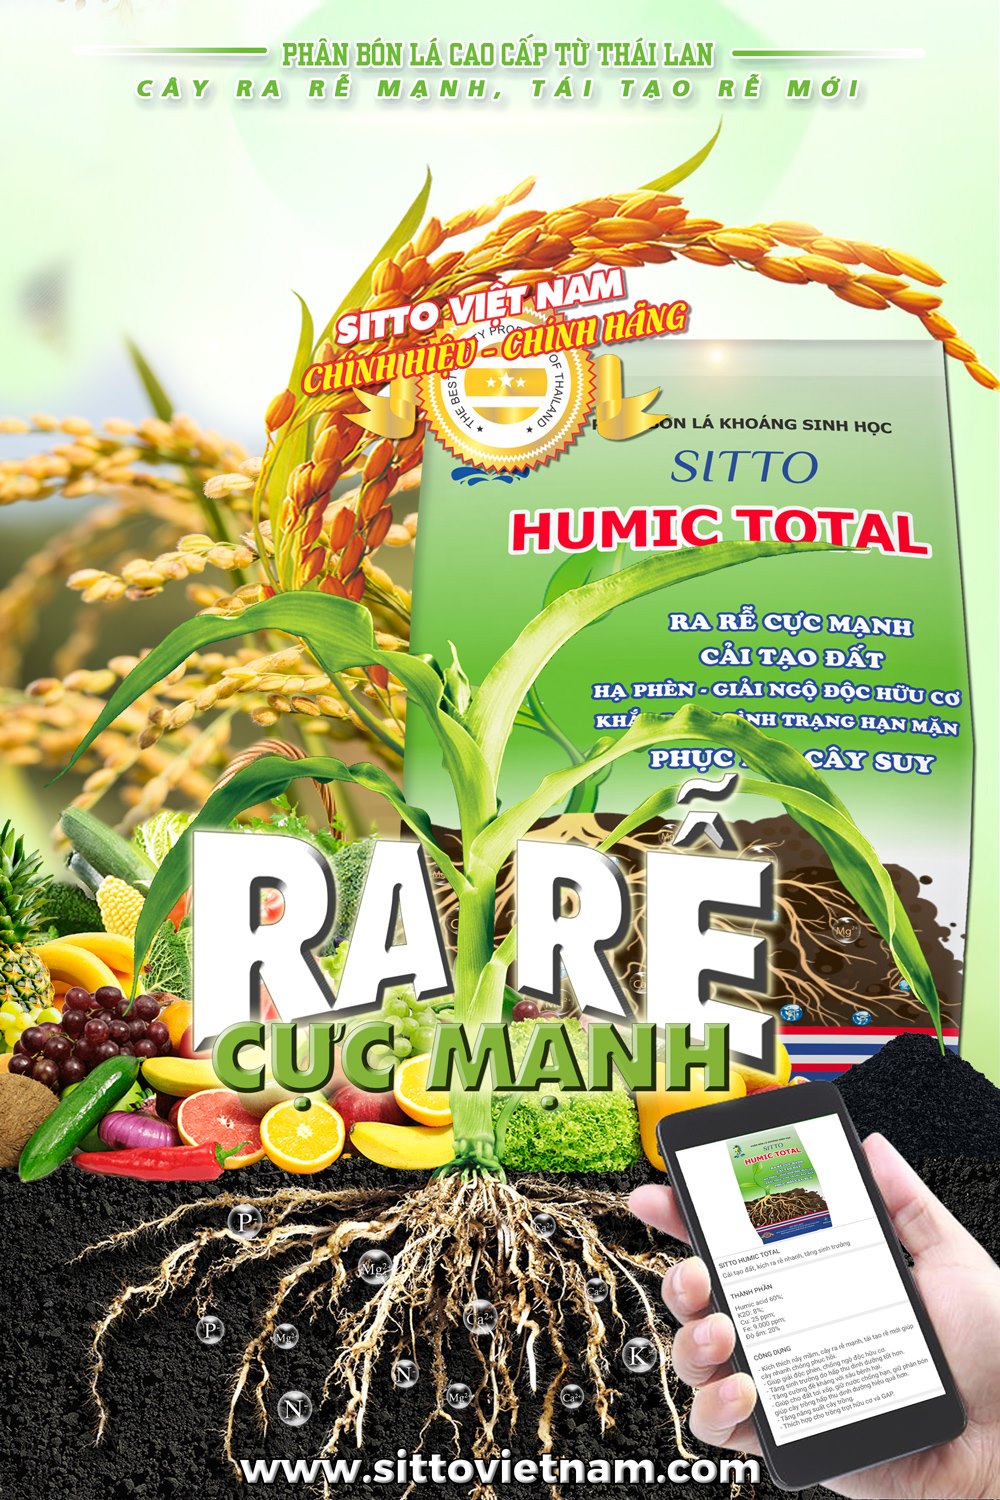 Sitto Humic Total (gói 1kg) - Ra rễ cực mạnh